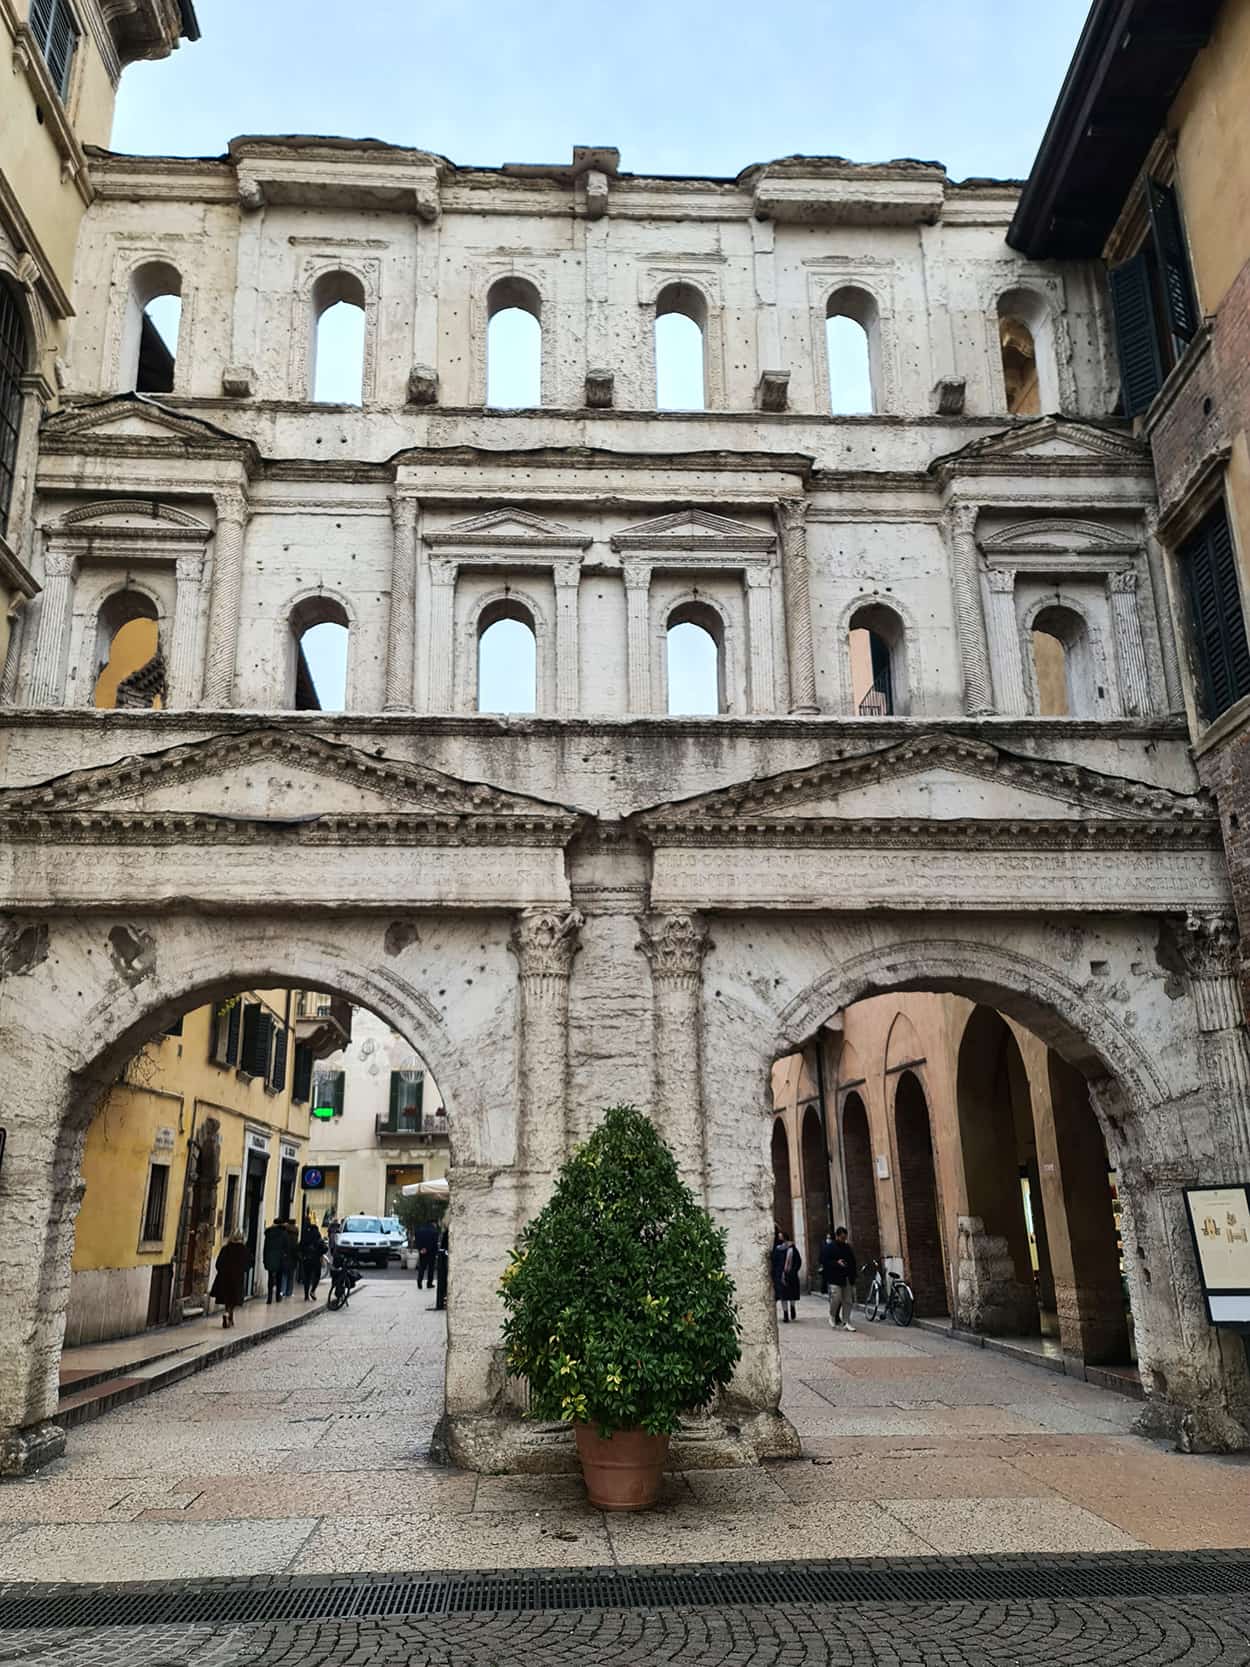 In foto si vede Porta Borsari, una porta molto antica, con due grandi archi da cui passare e tante piccole finestrelle che ricordano un po' quelle del Colosseo.